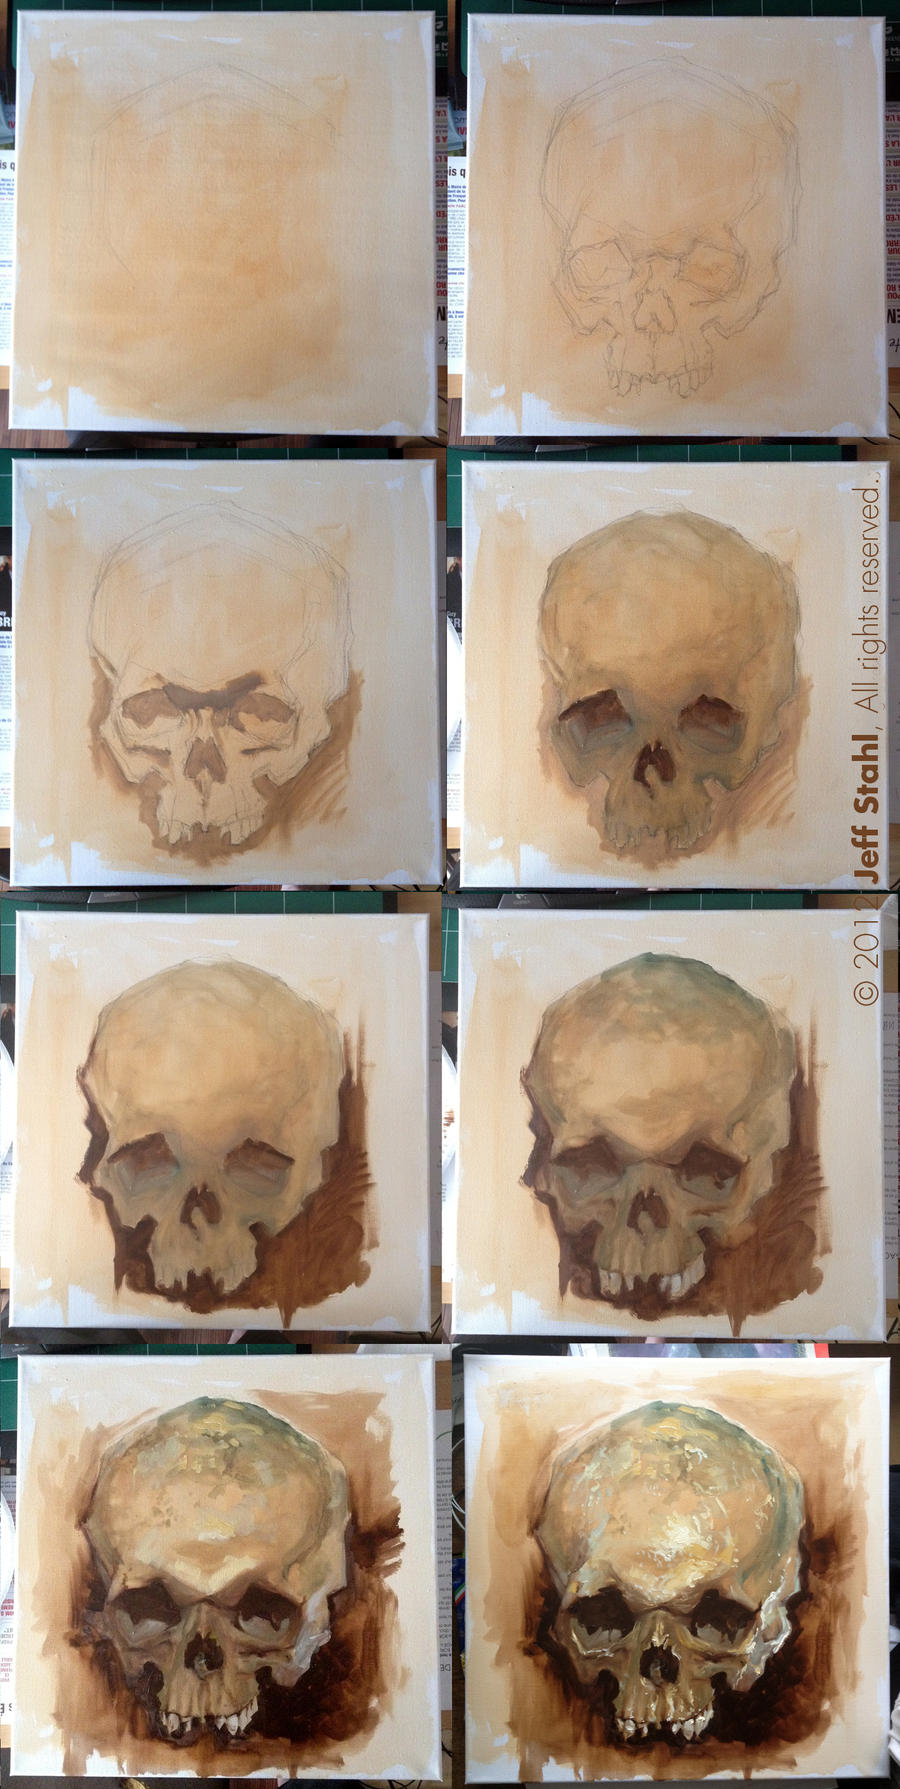 Skull study, step by step